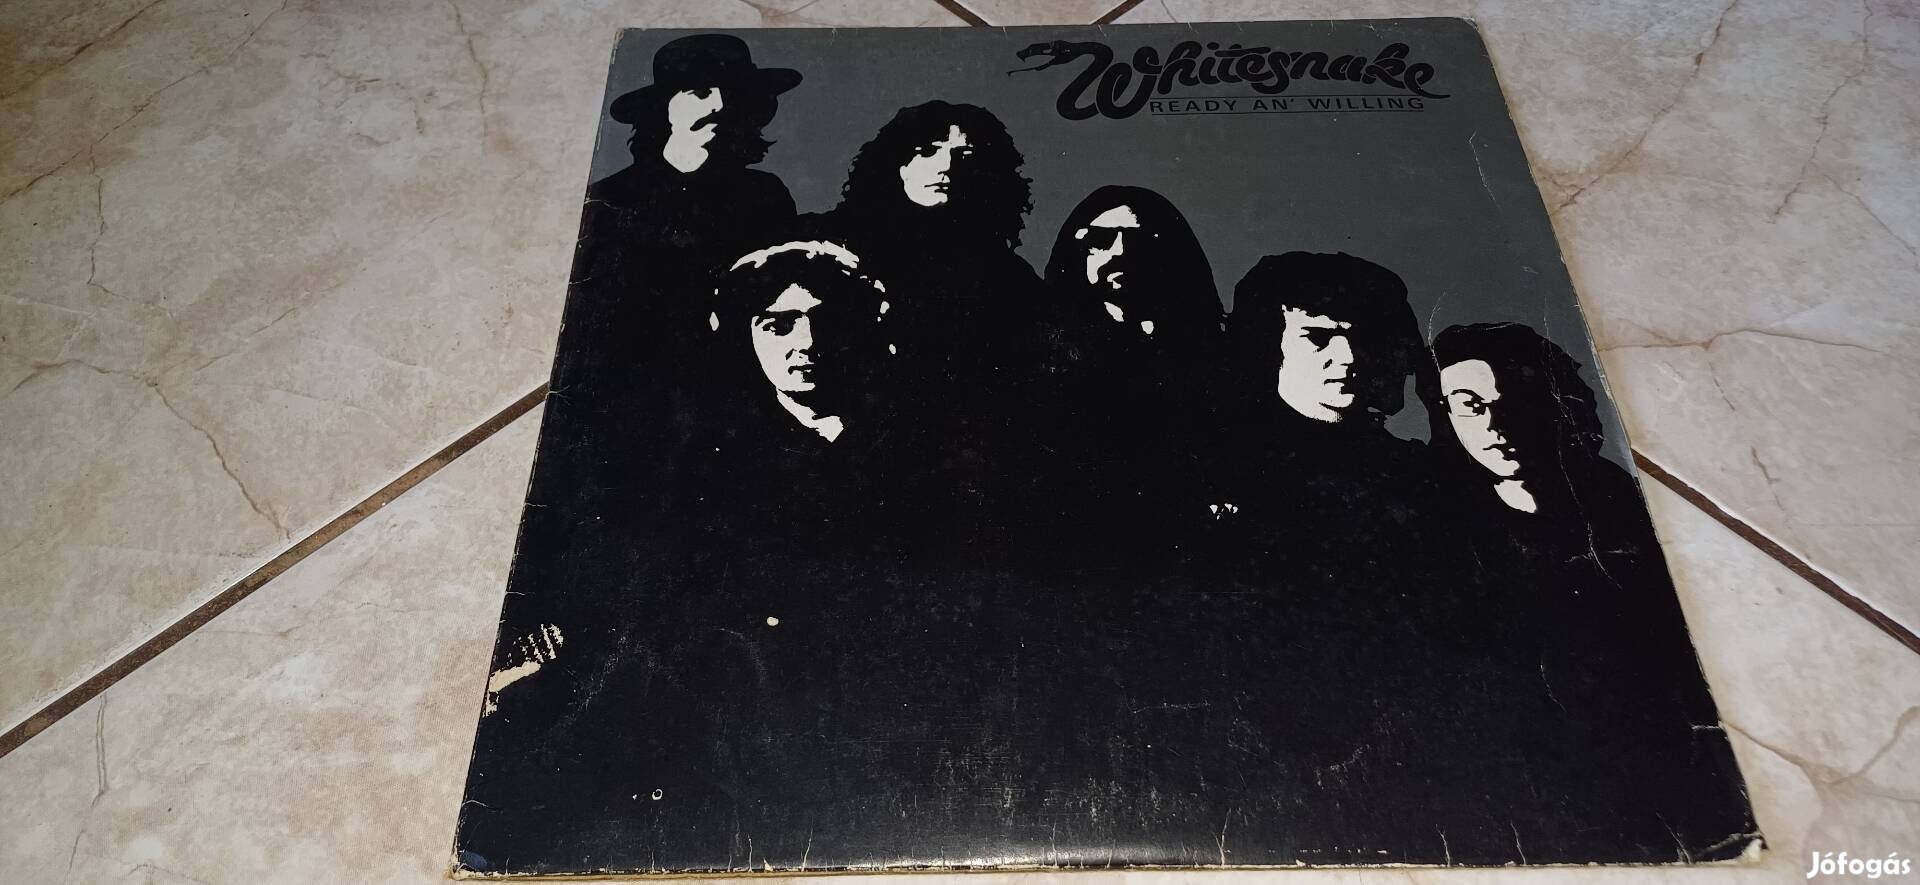 Whitesnake bakelit lemez